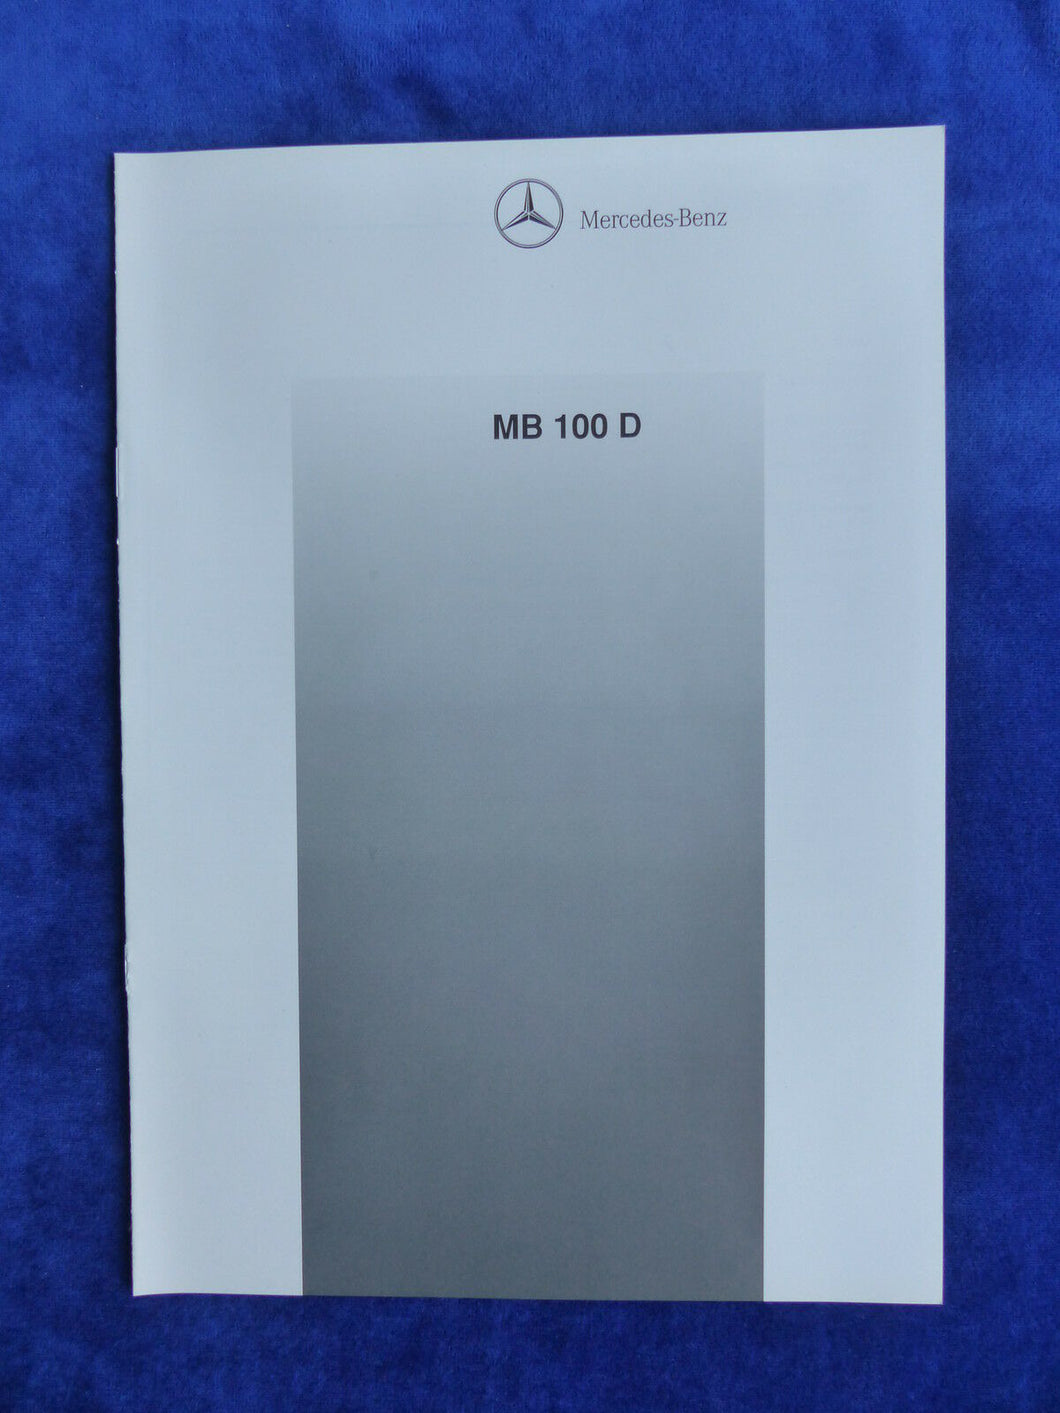 Mercedes-Benz Transporter MB 100 D - Technische Daten - Prospekt Brochure 02.1992